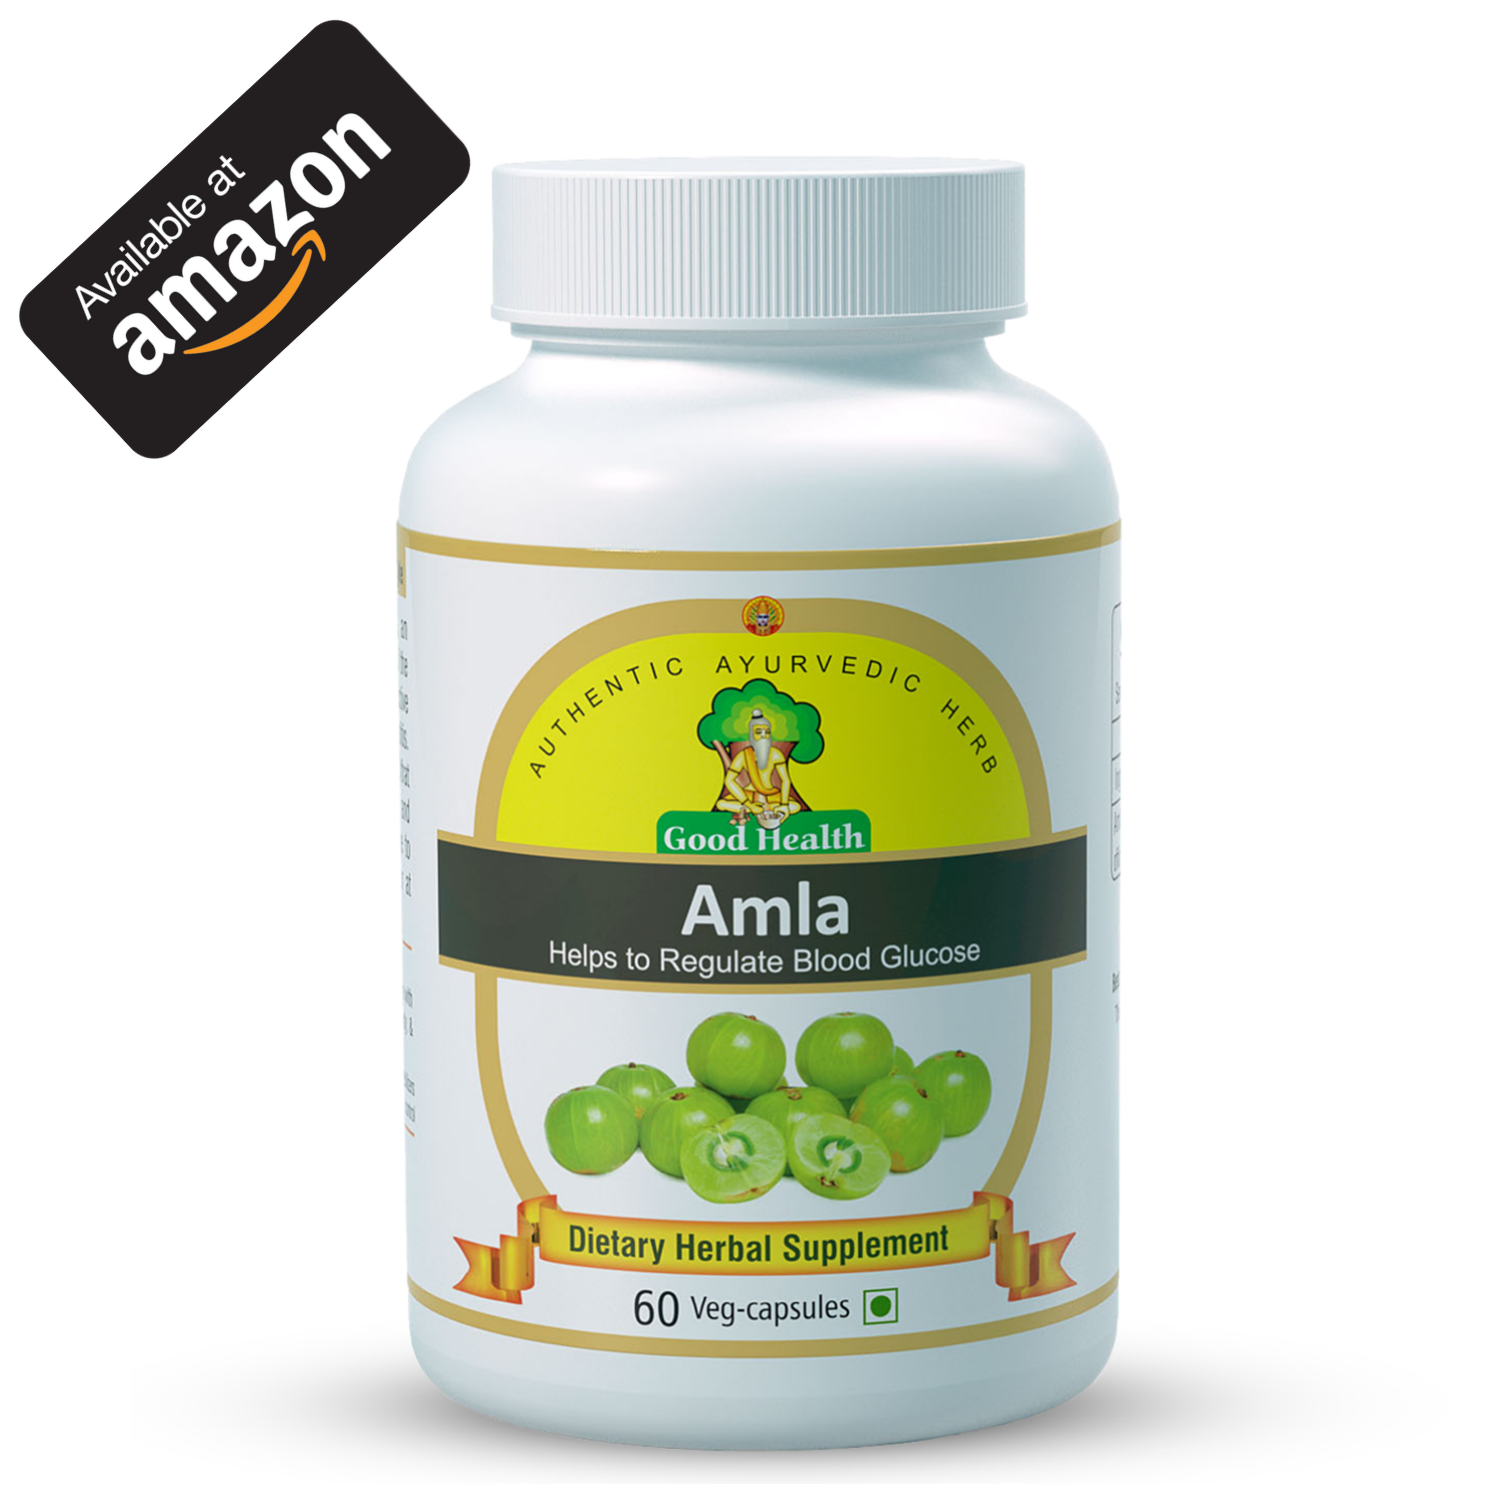 Sushrut Ayurved Industries Amla Dietary Supplement Available on Amazon